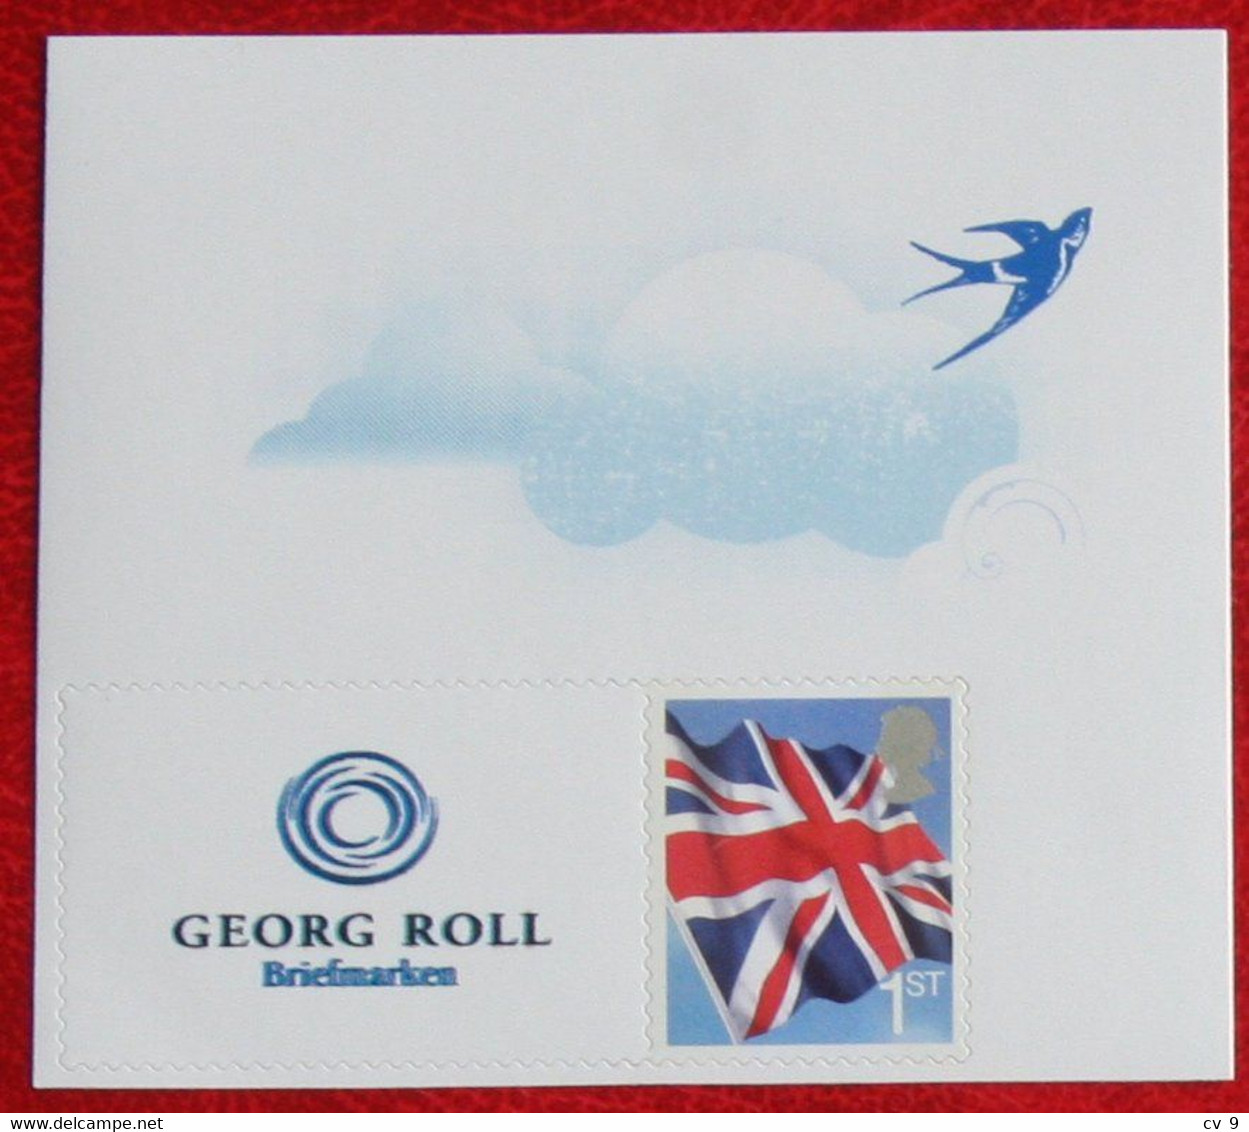 Smiler Smilers Personal Stamp Georg Roll Briefmarken FLAG  POSTFRIS MNH ** ENGLAND GRANDE-BRETAGNE GB GREAT BRITAIN - Personalisierte Briefmarken